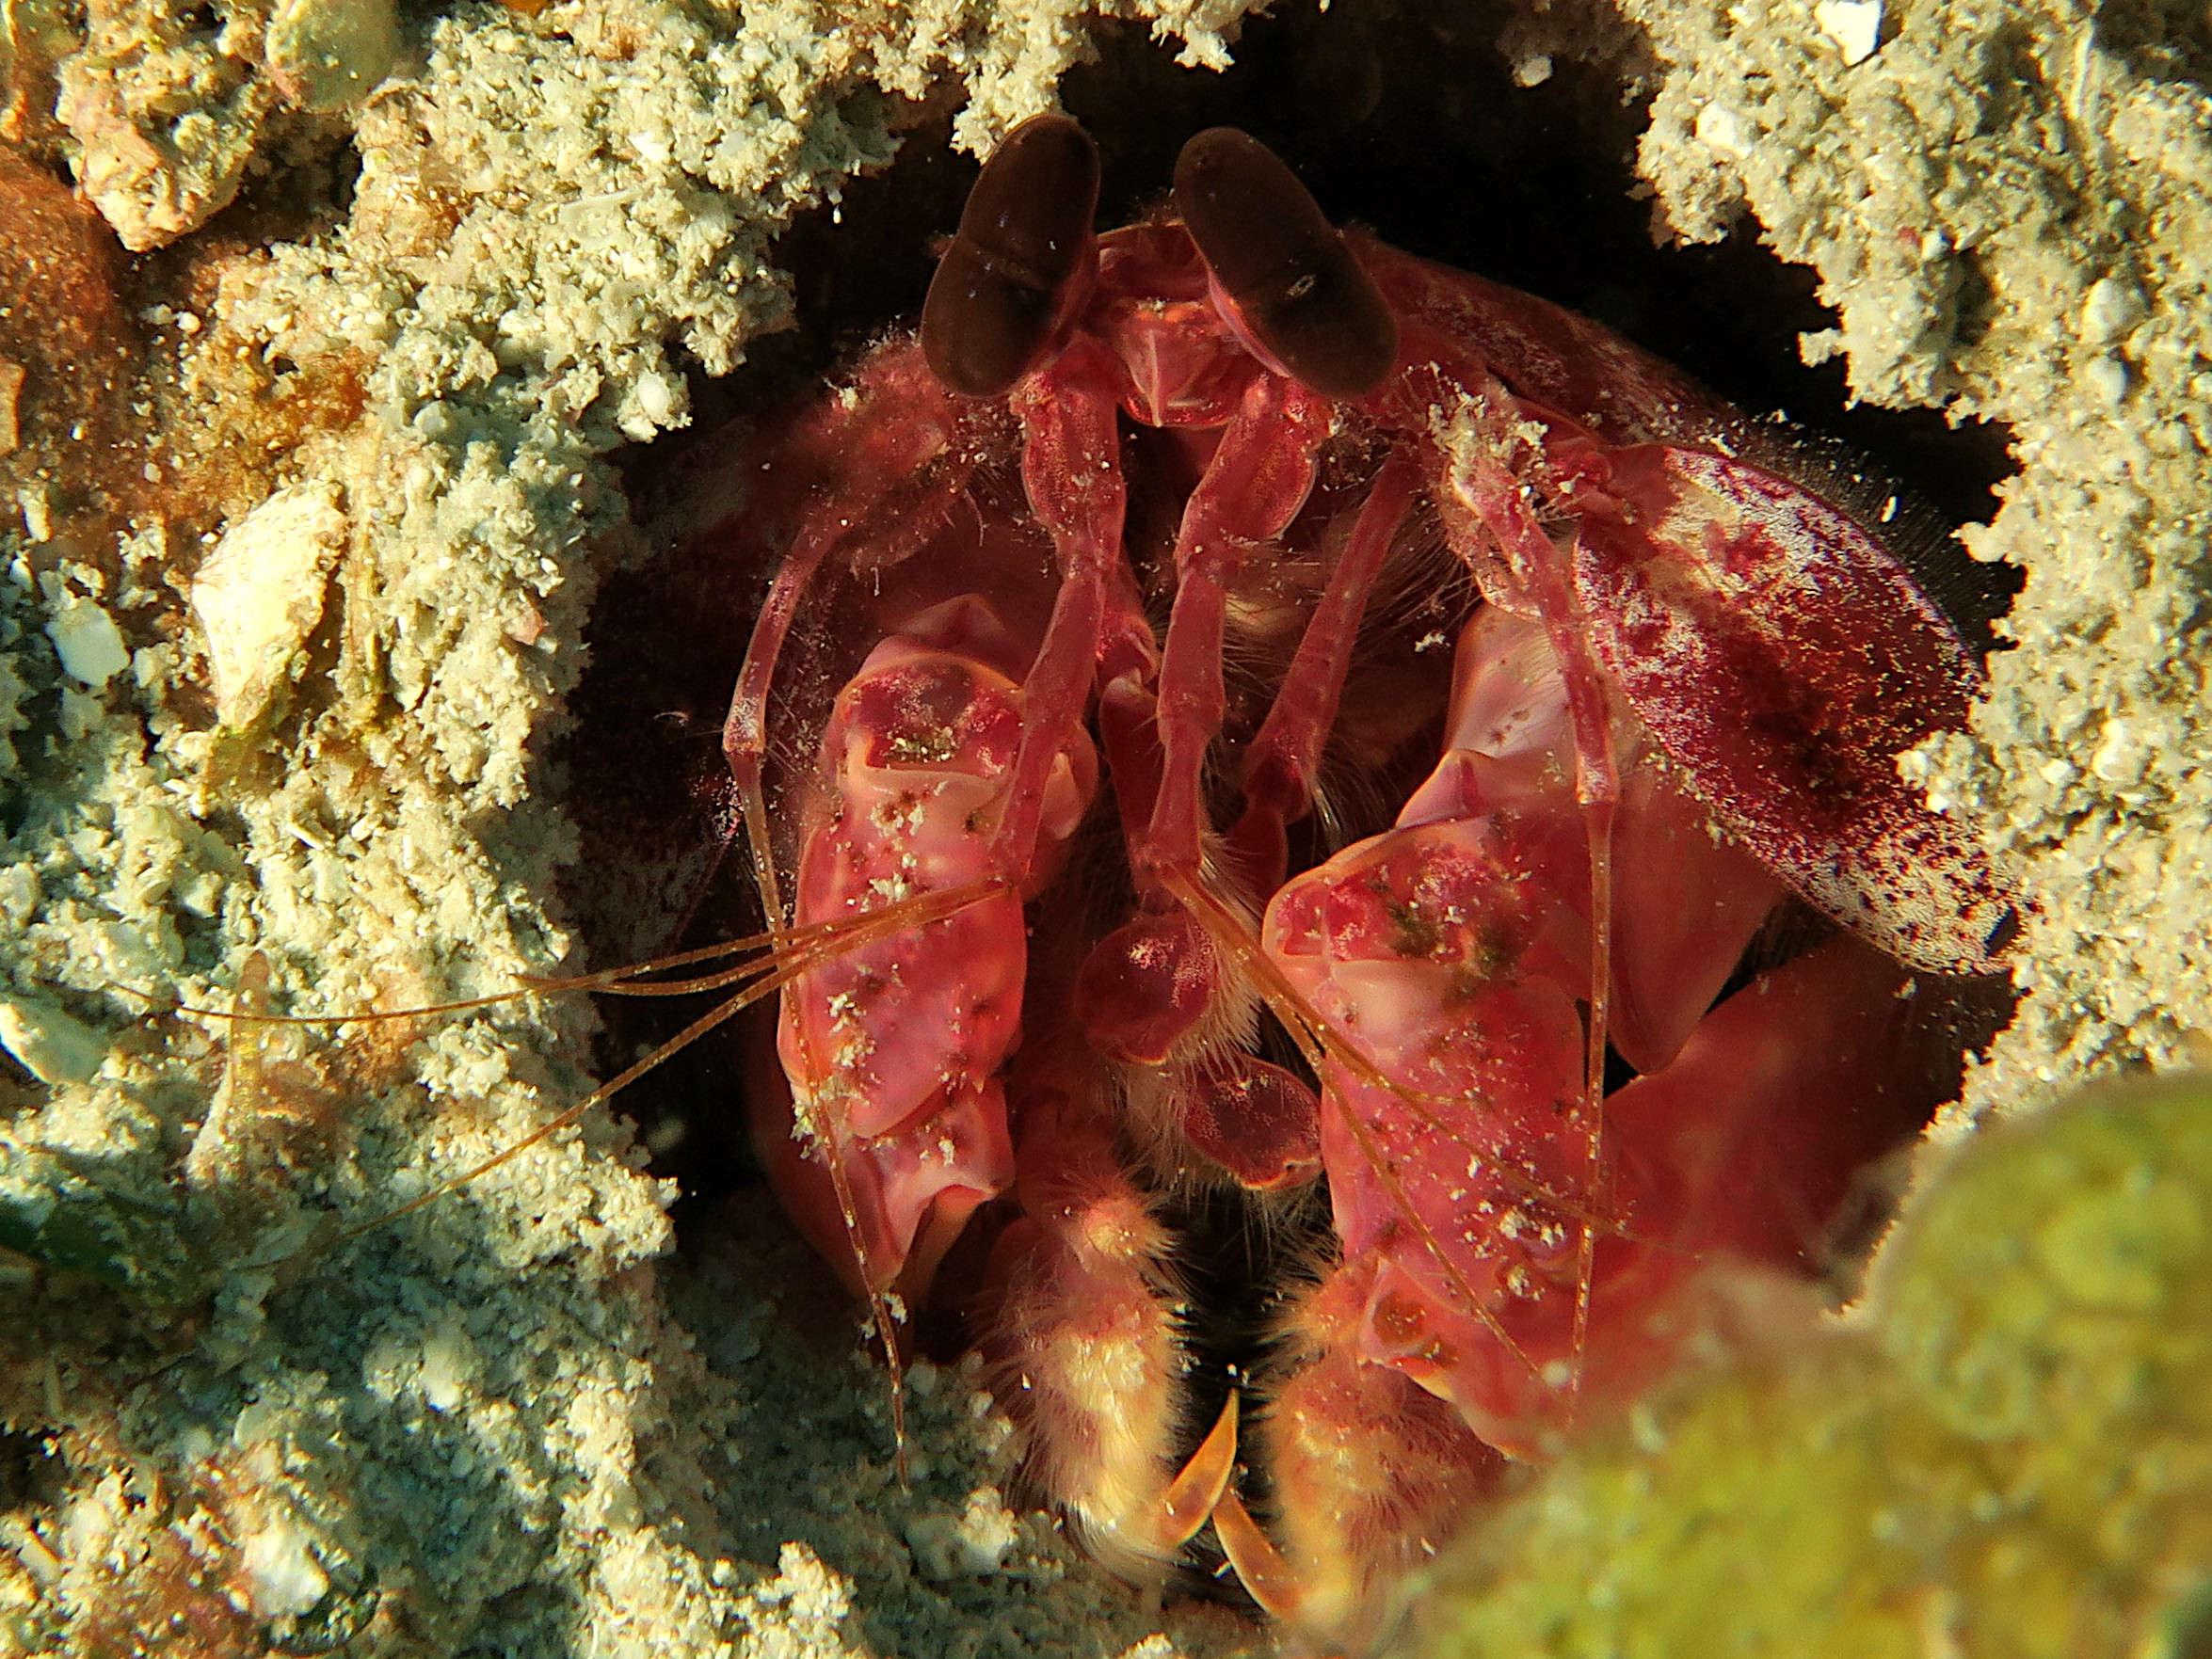 Caribbean Reef Mantis Shrimp - Lysiosquilla glabriuscula